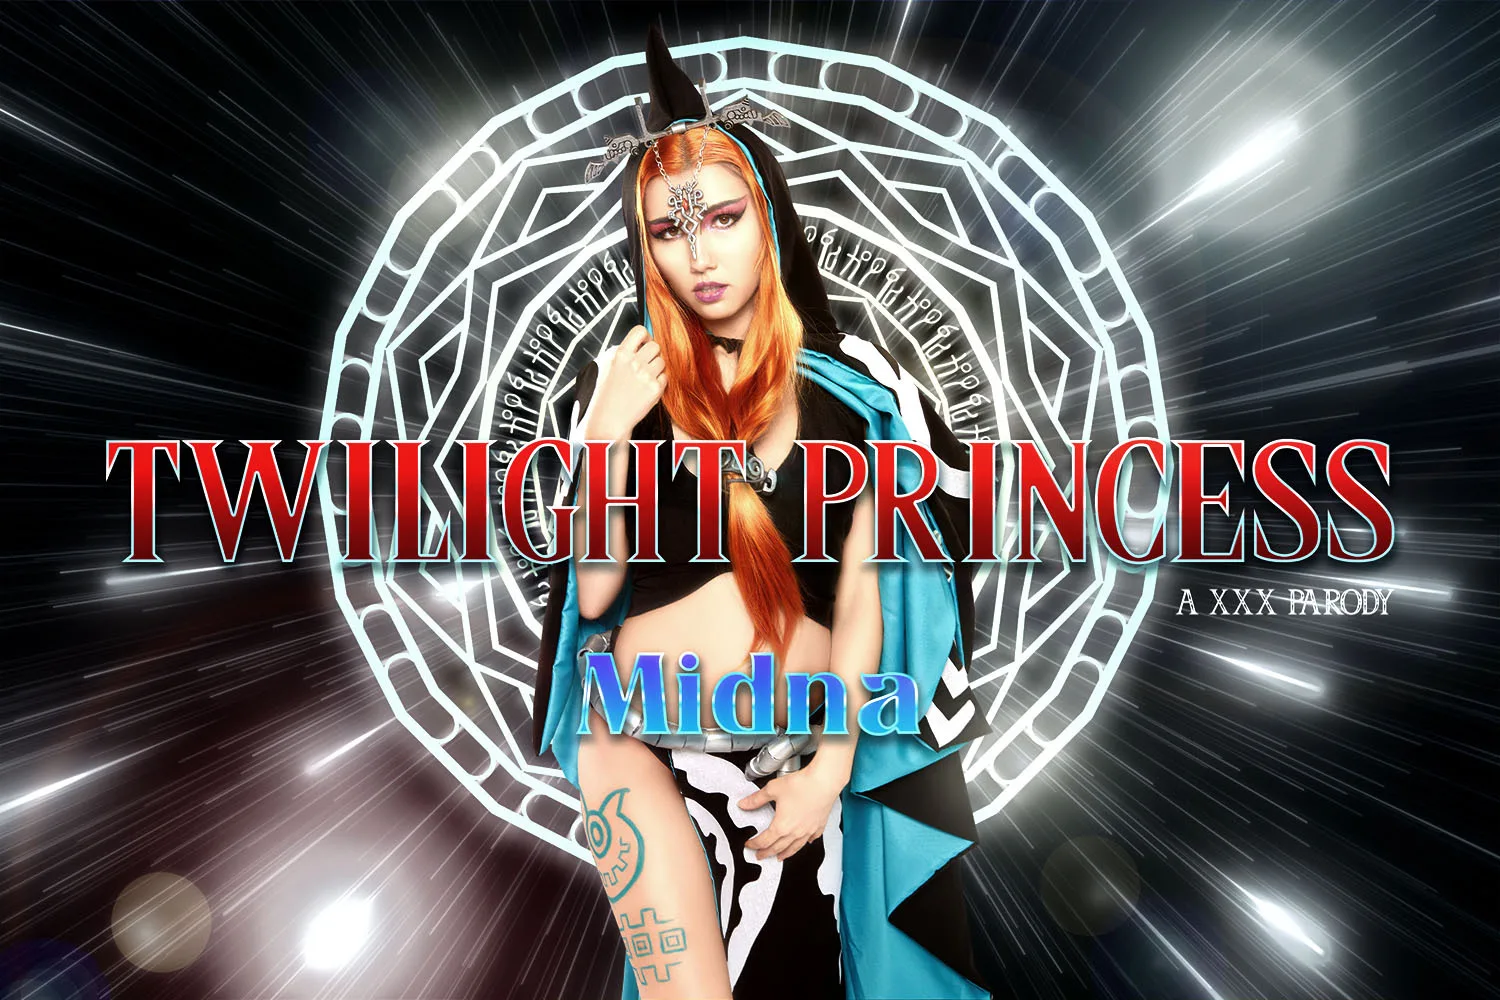 [2022-08-25] Twilight Princess: Midna A XXX Parody - VRCosplayX